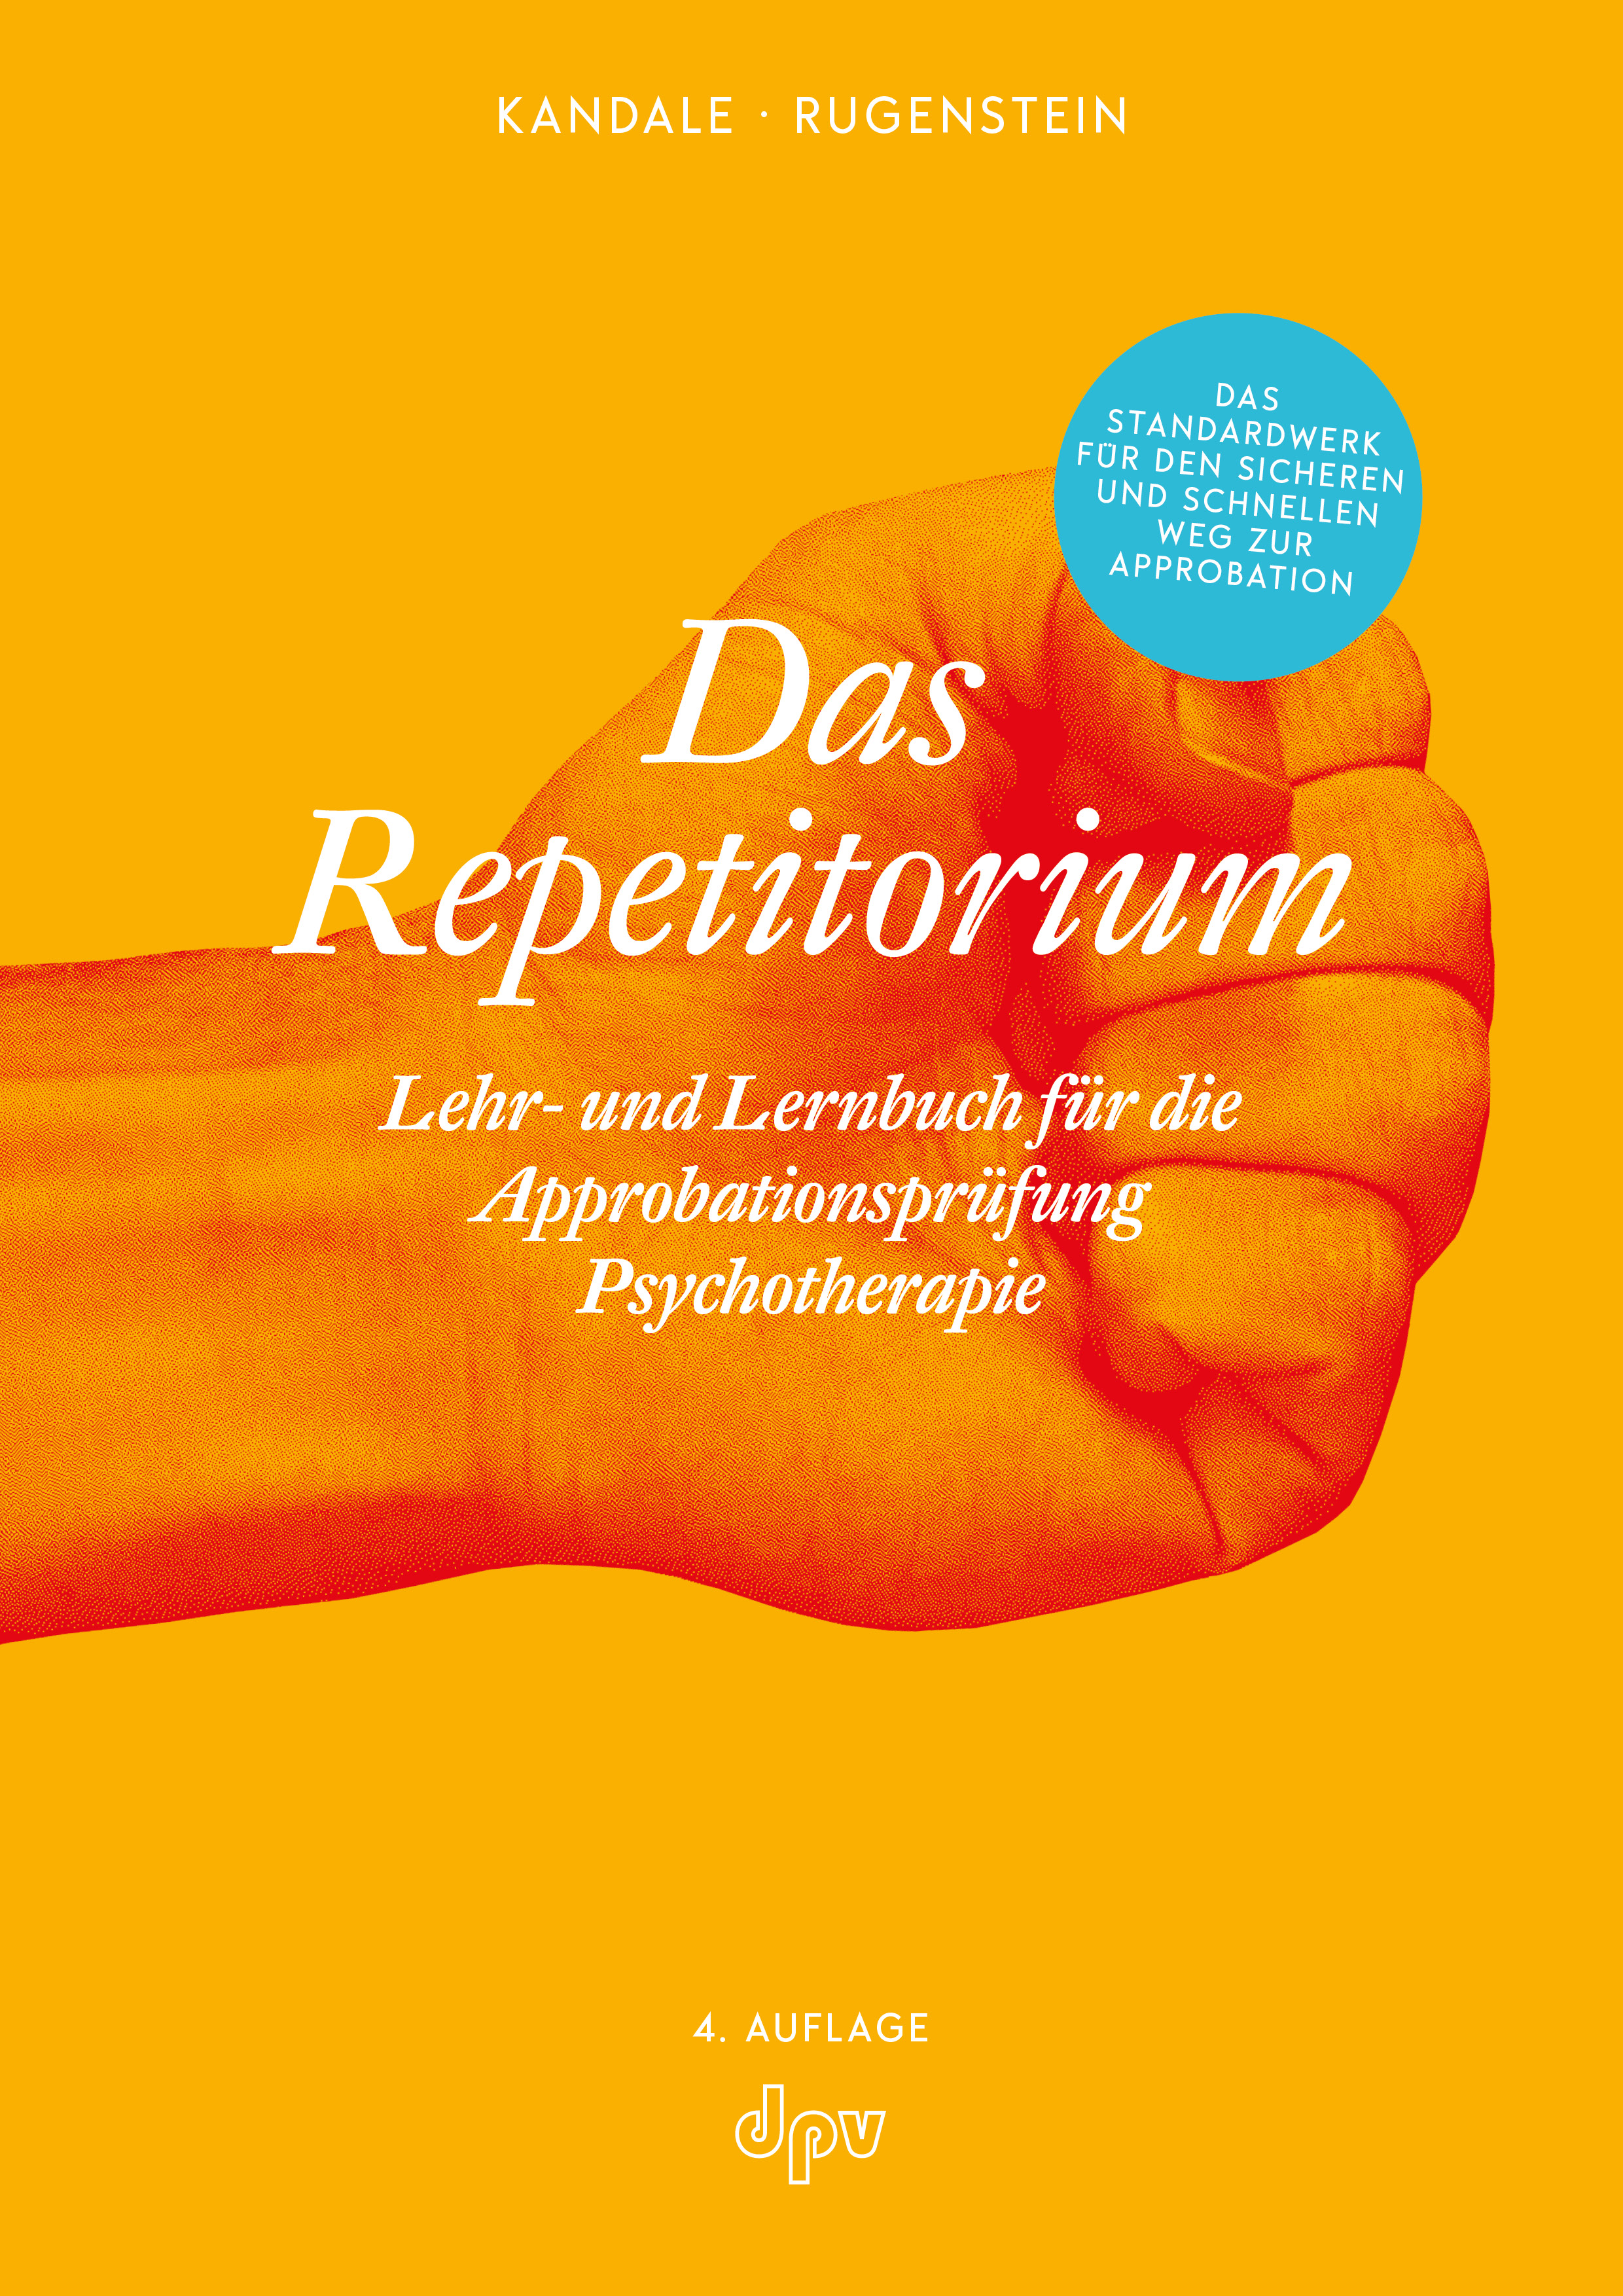 Das Repetitorium (Buch und Ebook)